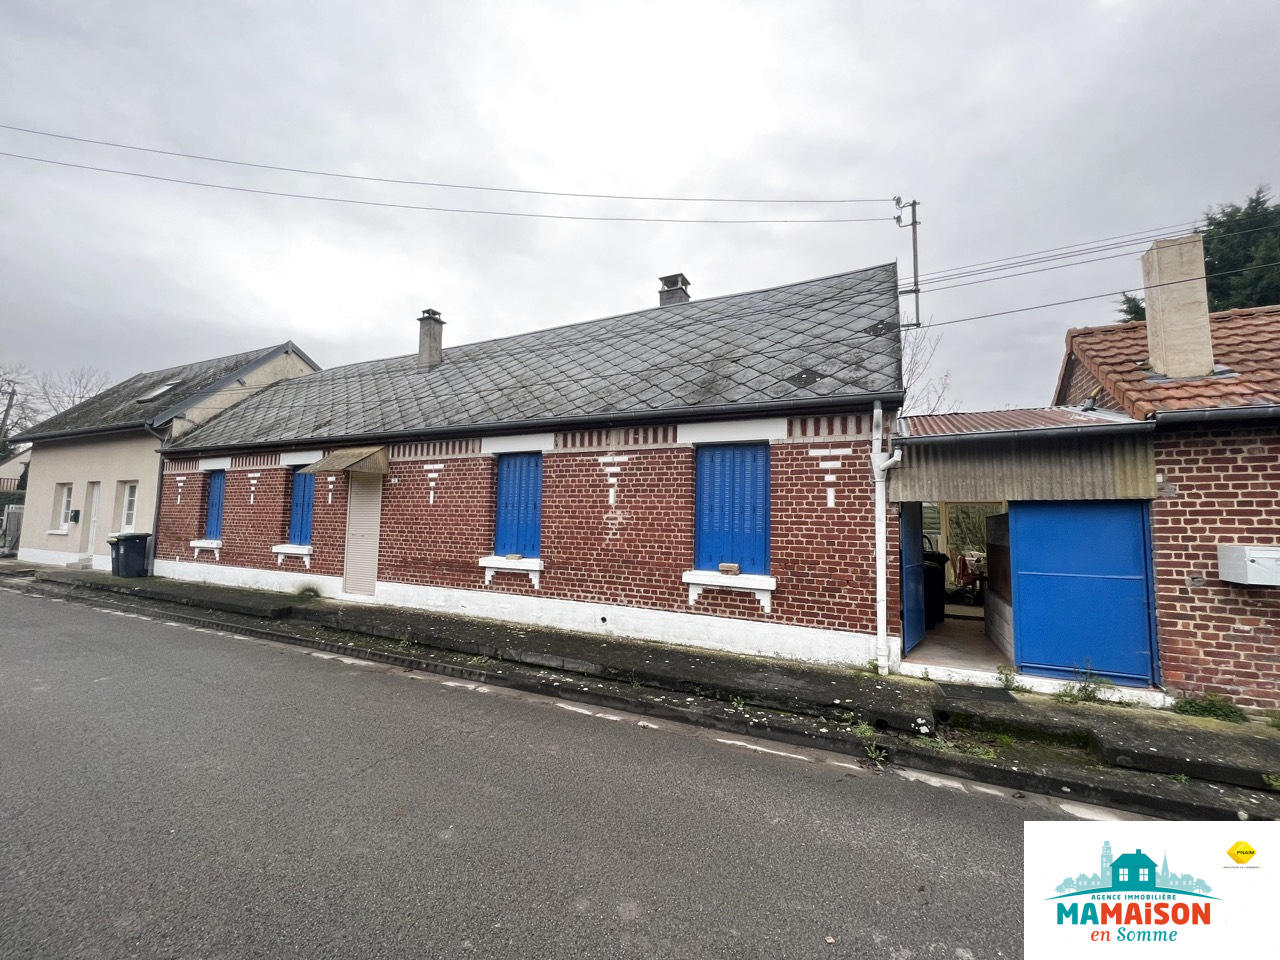 Immo80 – L'immobilier à Amiens et dans la Somme-Exclusivité, à Bonnay (80800), vente d’un ensemble immobilier composé de 2 logements dont...